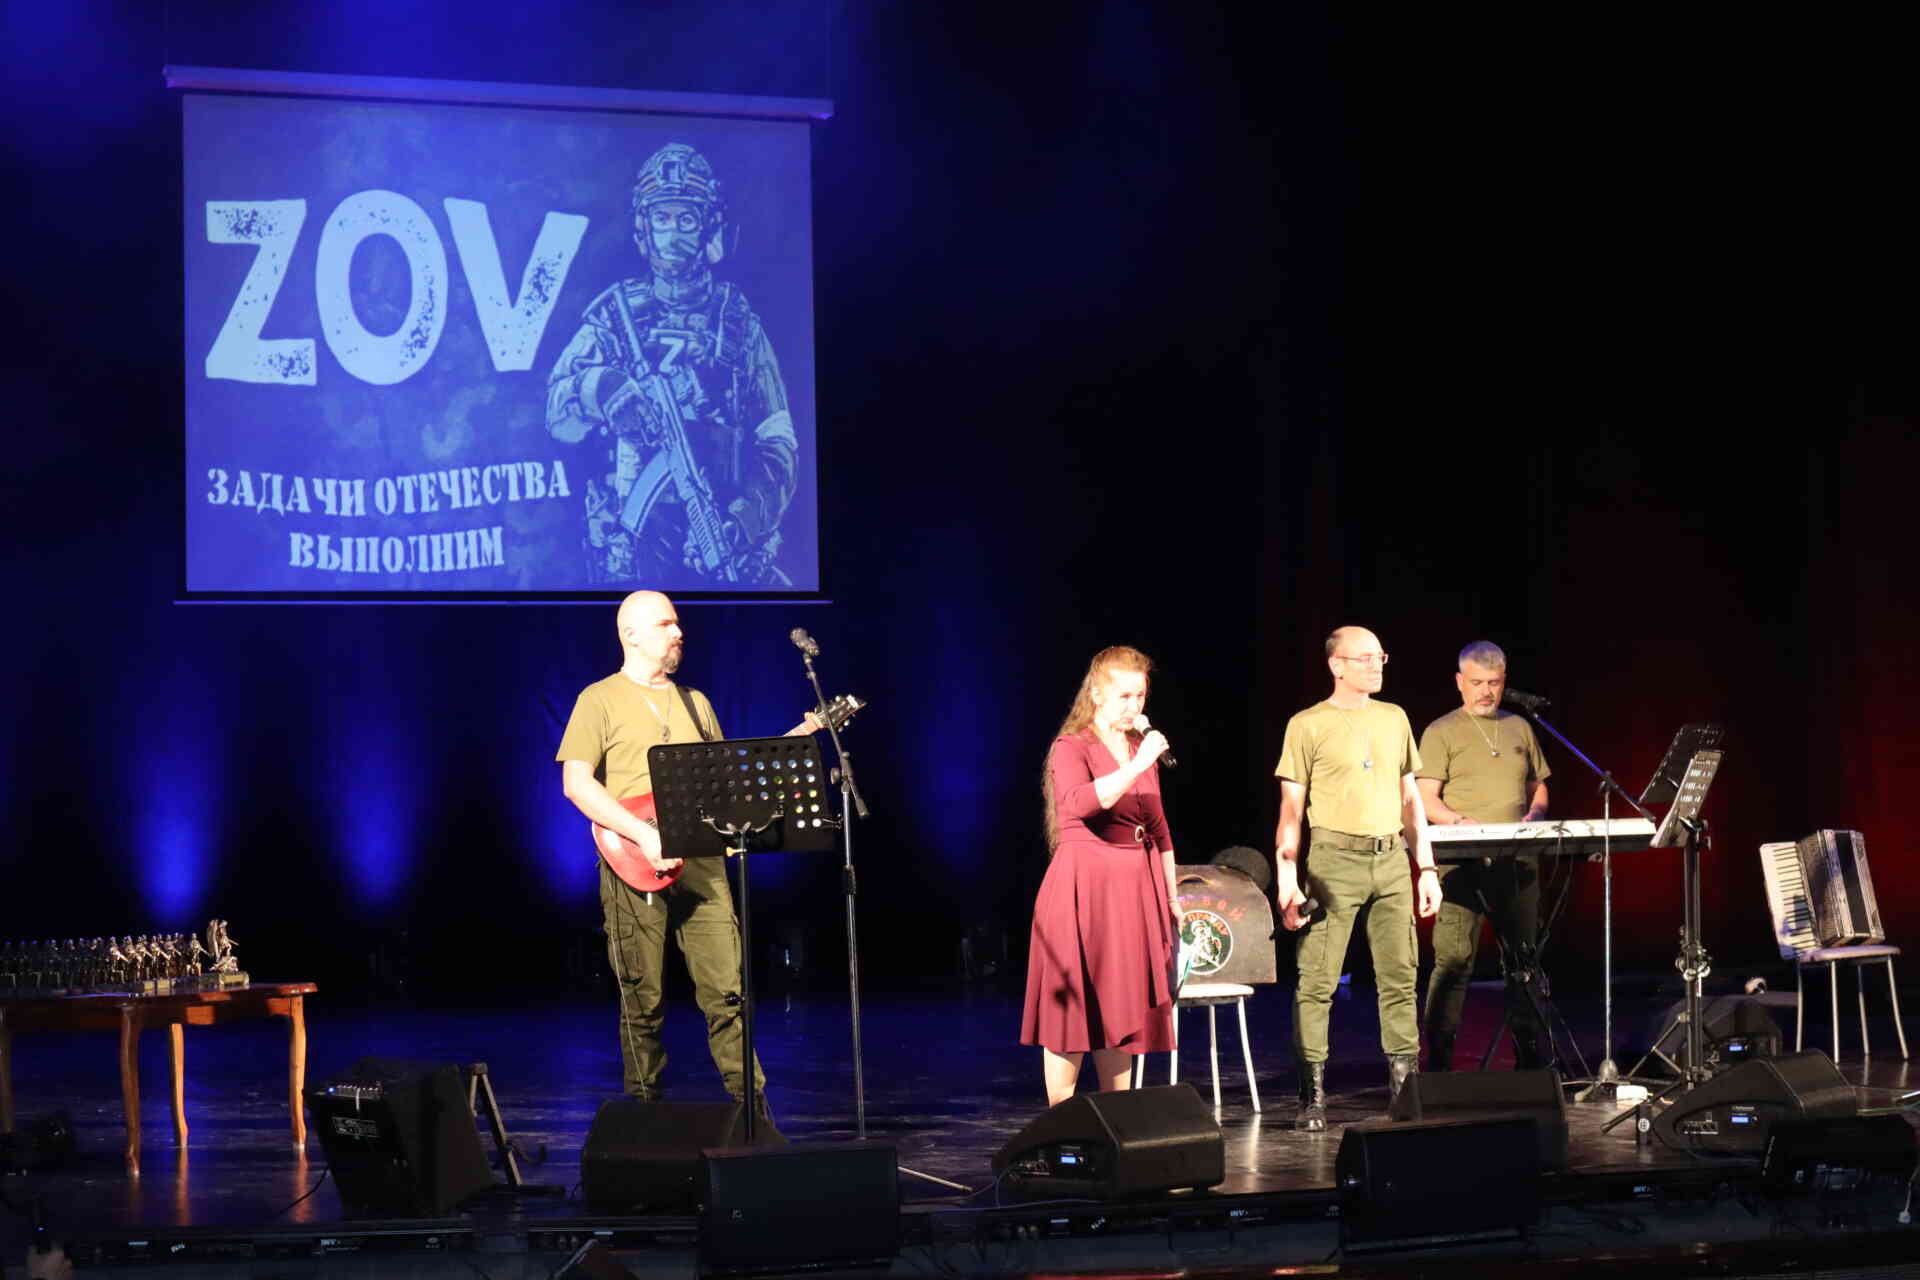 «Задачи Отечества выполним!»: в Миассе прошел концерт группы «ZOV»